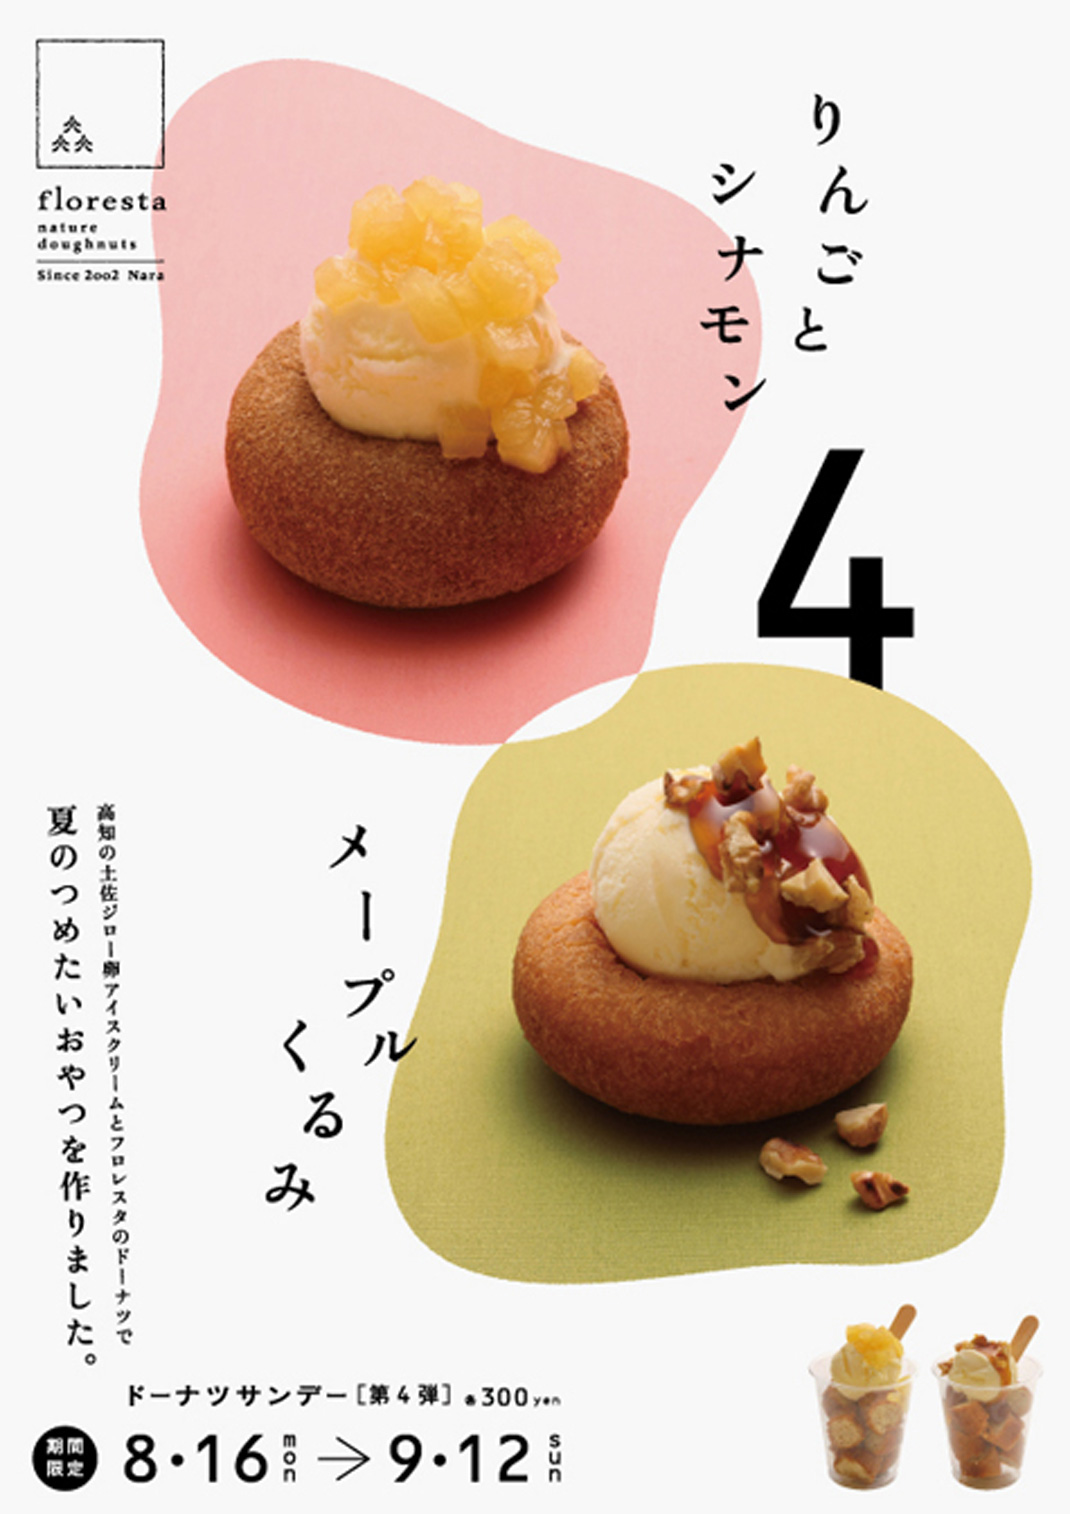 夏季限定甜甜圈海报设计 日本 海报设计 图形设计 版式设计 logo设计 vi设计 空间设计